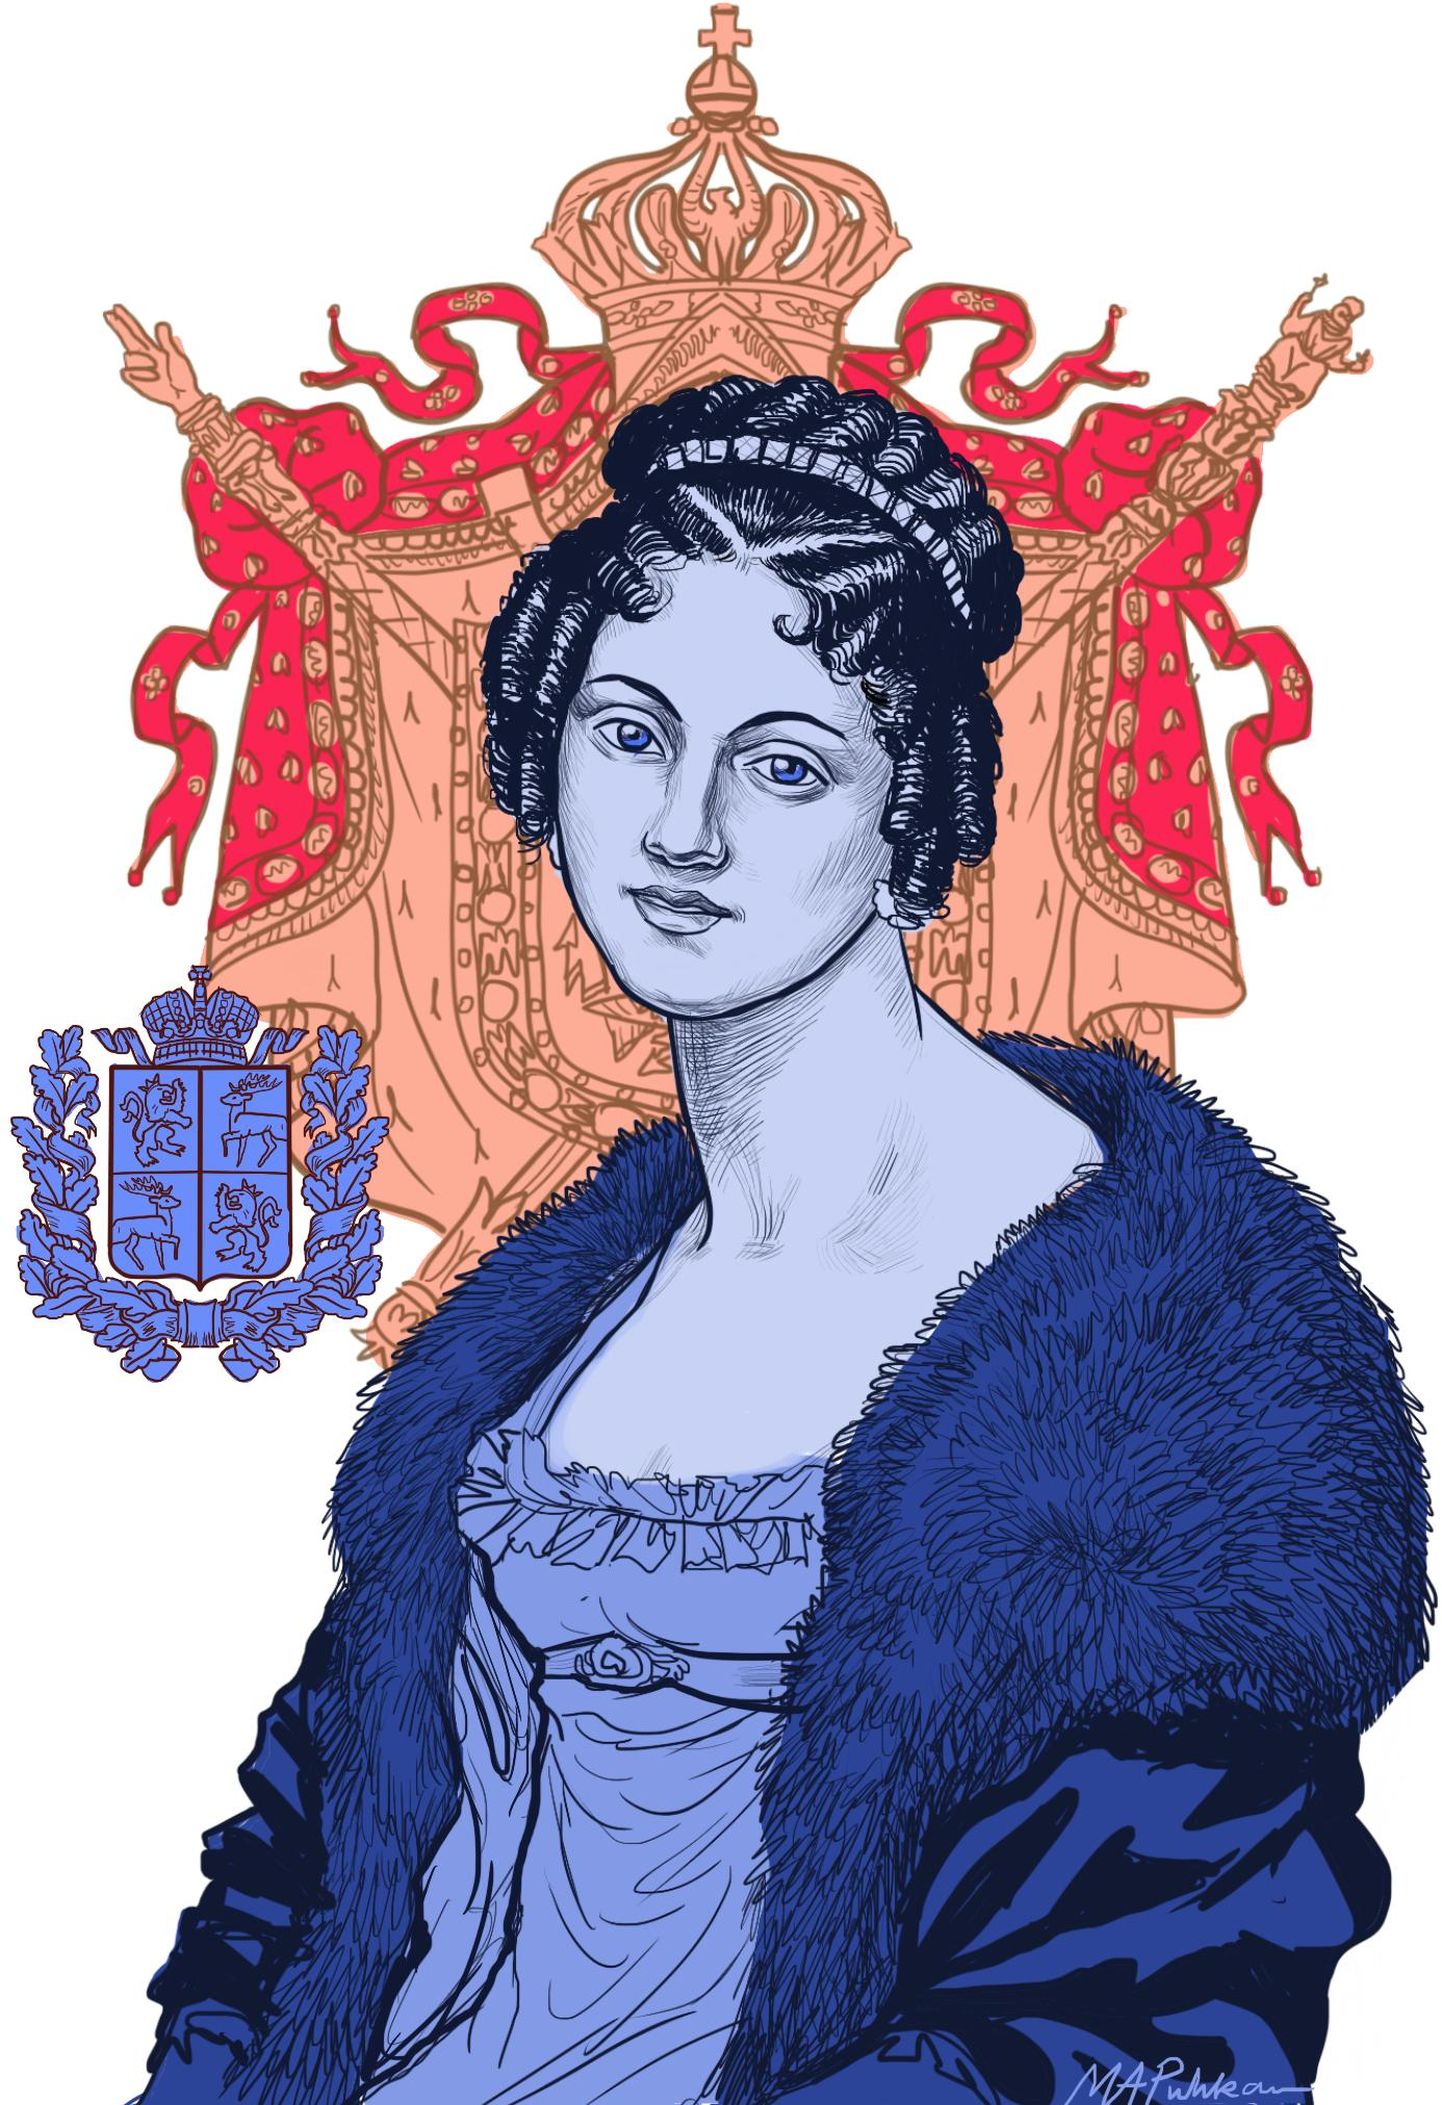 Kuramaa printsess Dorothea de Talleyrand-Périgord.